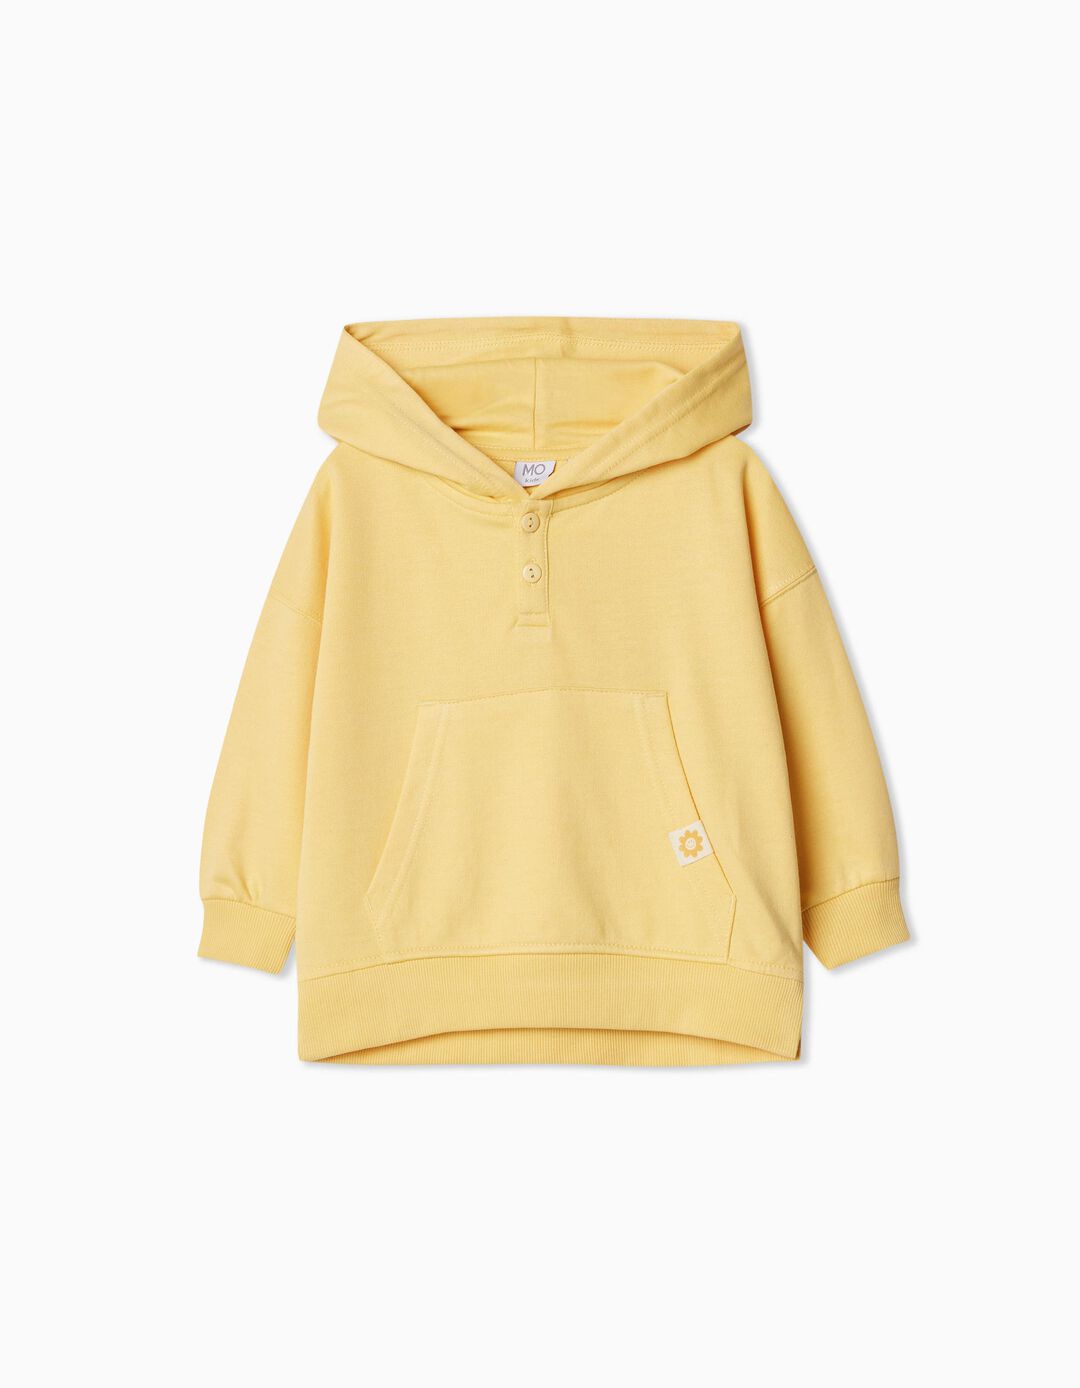 Fleece Hooded Sweatshirt, Baby Girl, Light Yellow